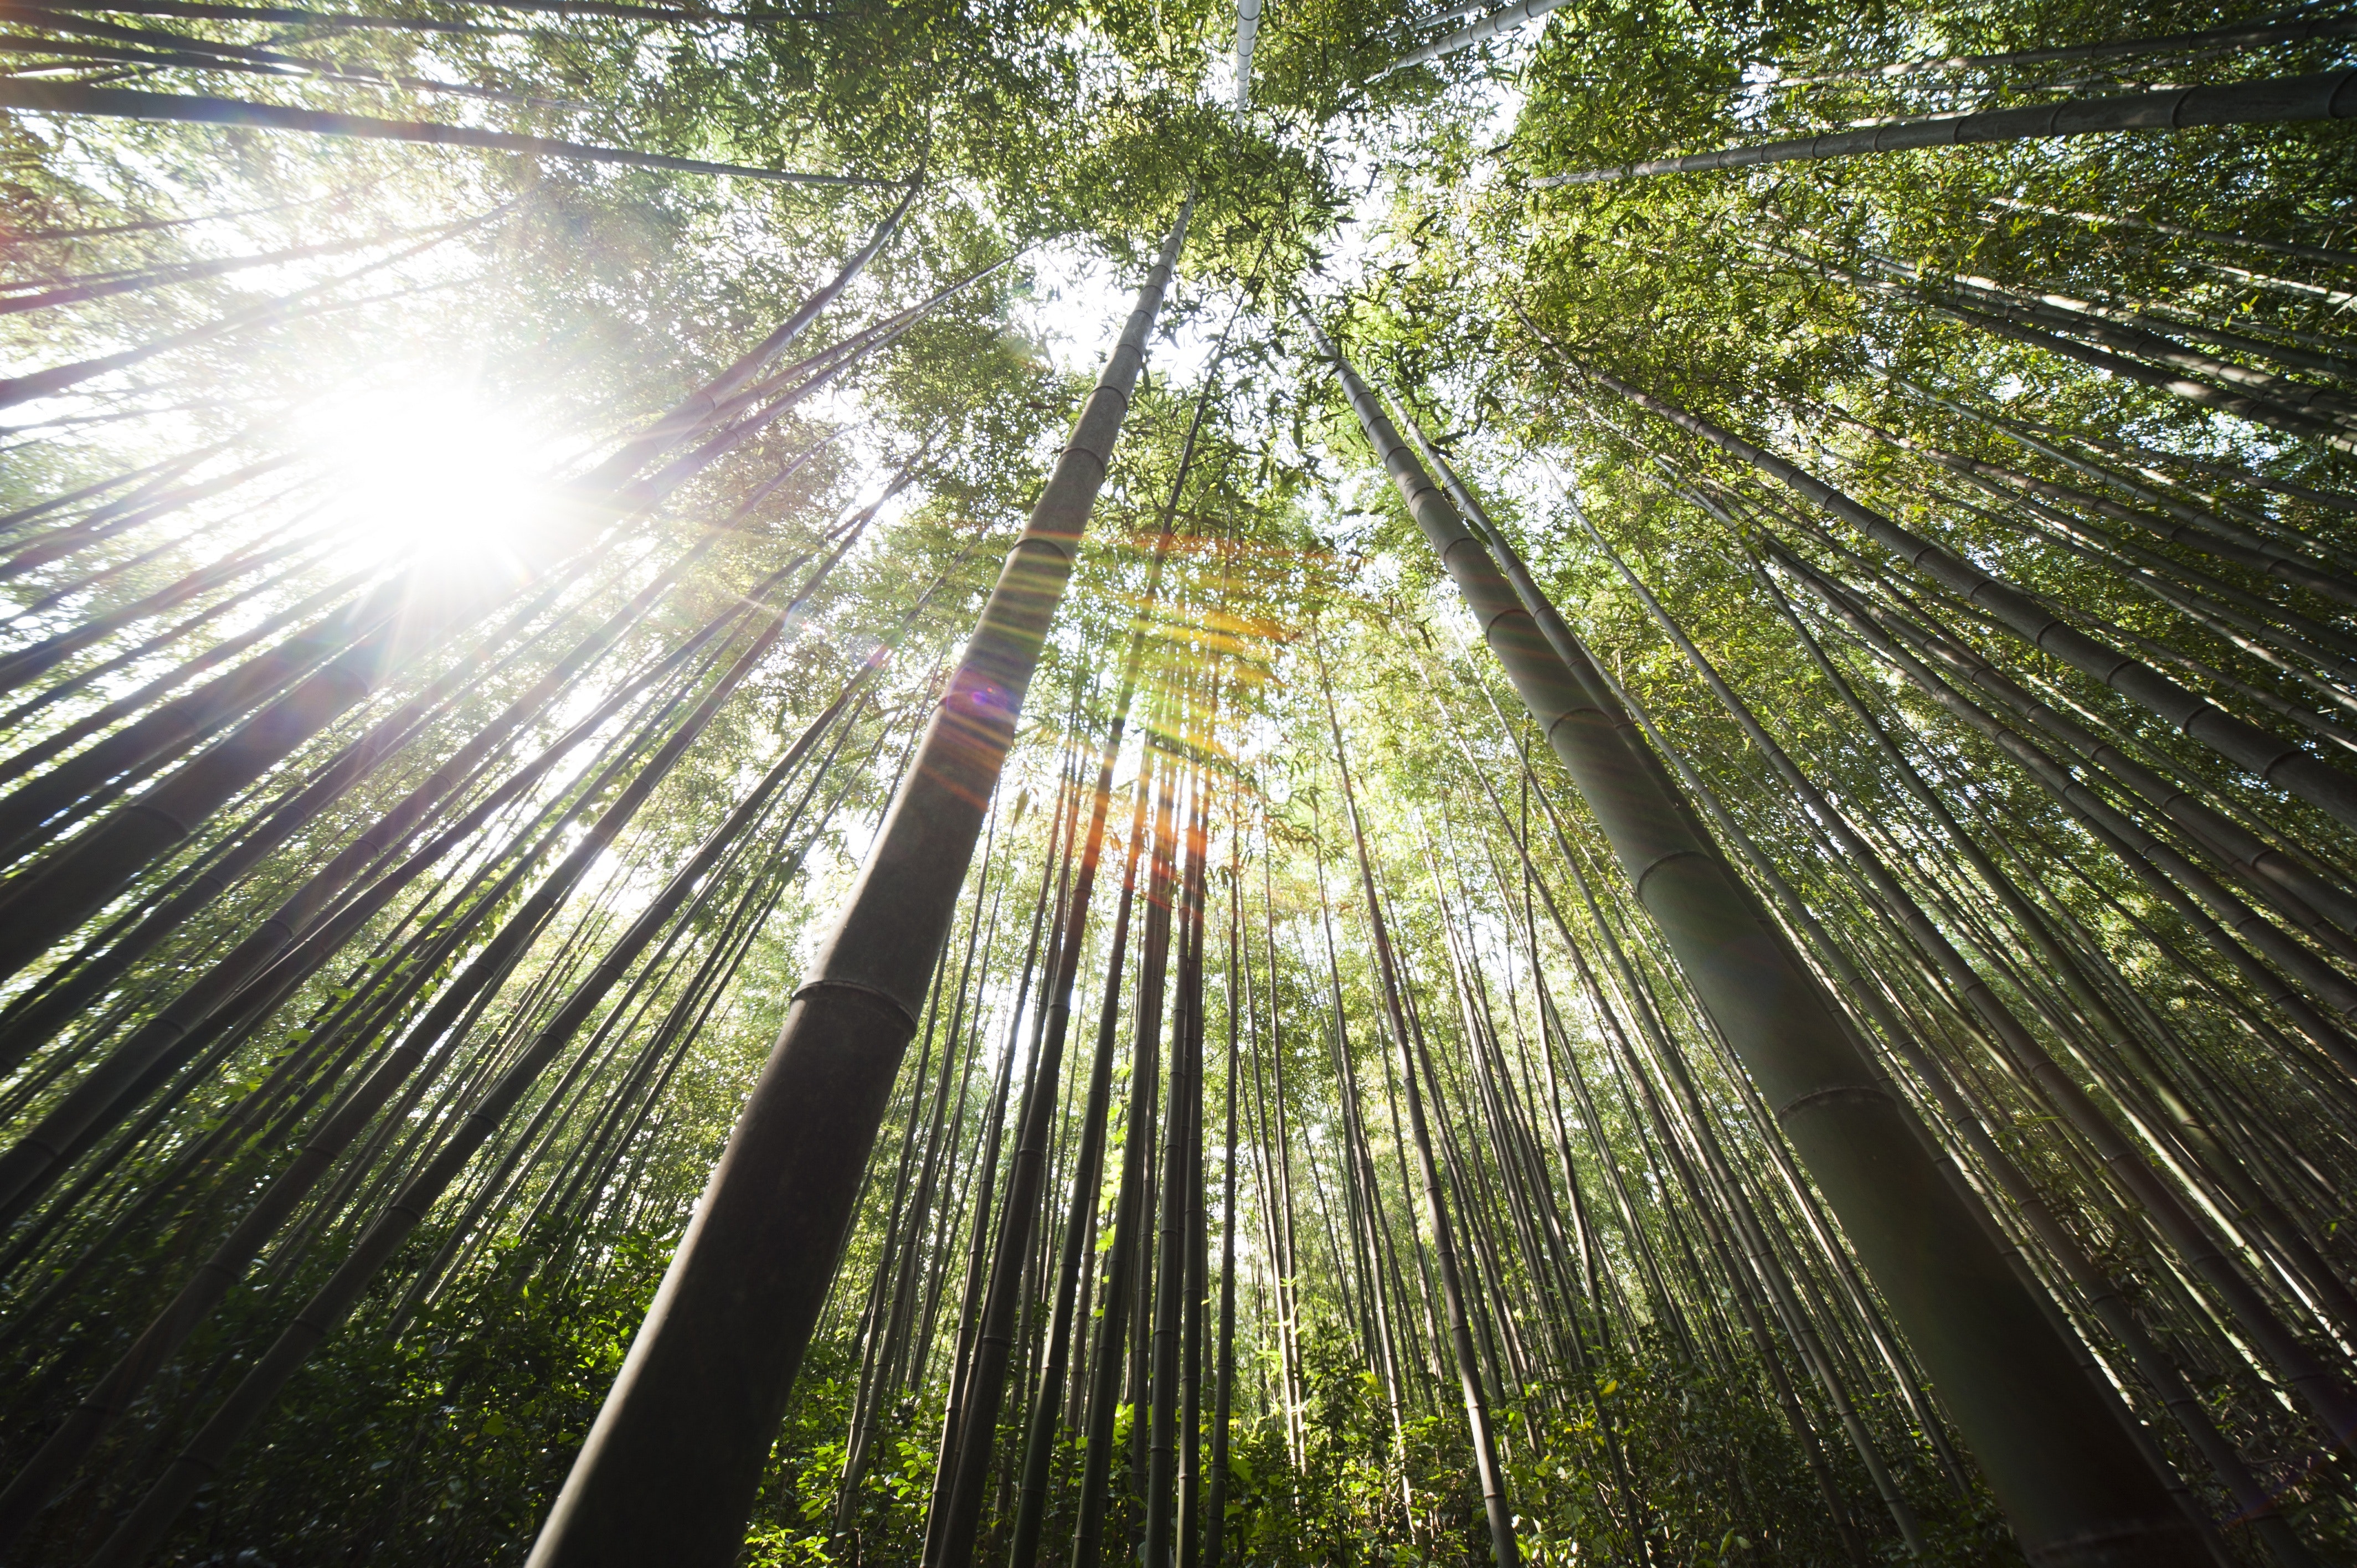 Bambù gigante: il re degli investimenti green